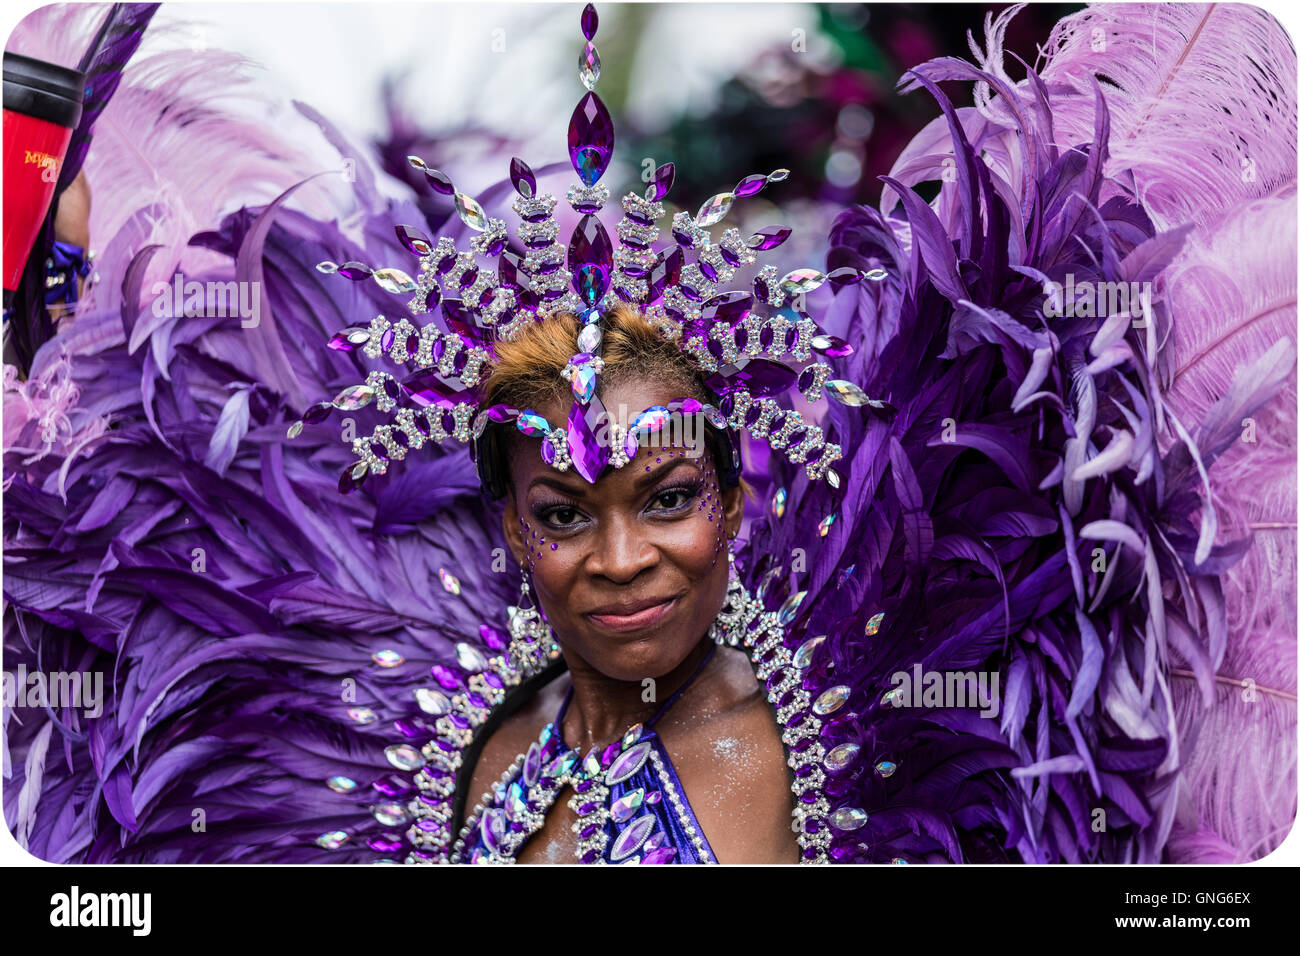 Belle femme Afro Antillais en costume au carnaval de Notting Hill dans l'ouest de Londres dans les plumes pourpres Banque D'Images